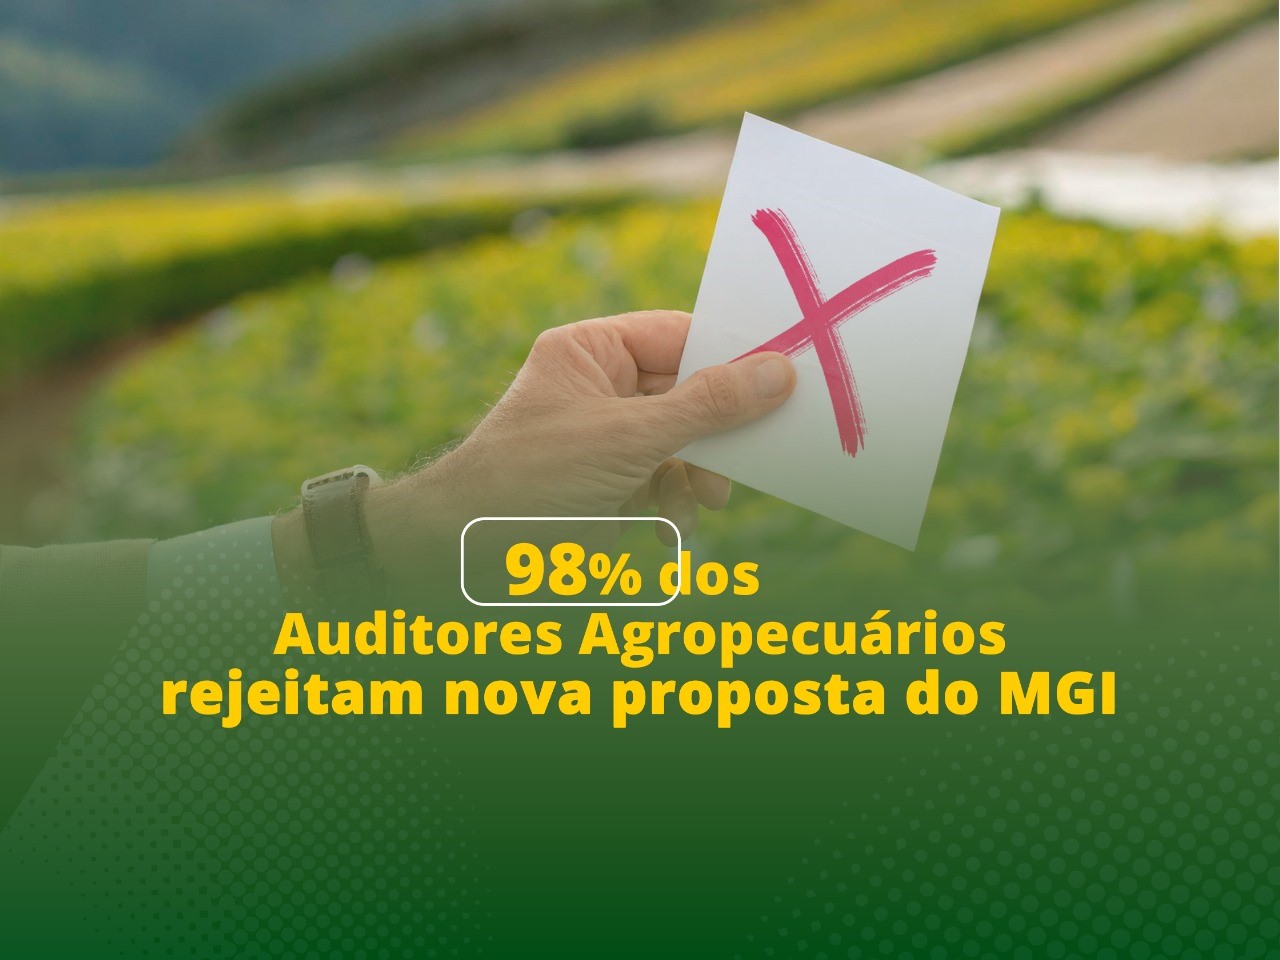 98% dos Auditores Agropecuários rejeitam nova proposta do MGI